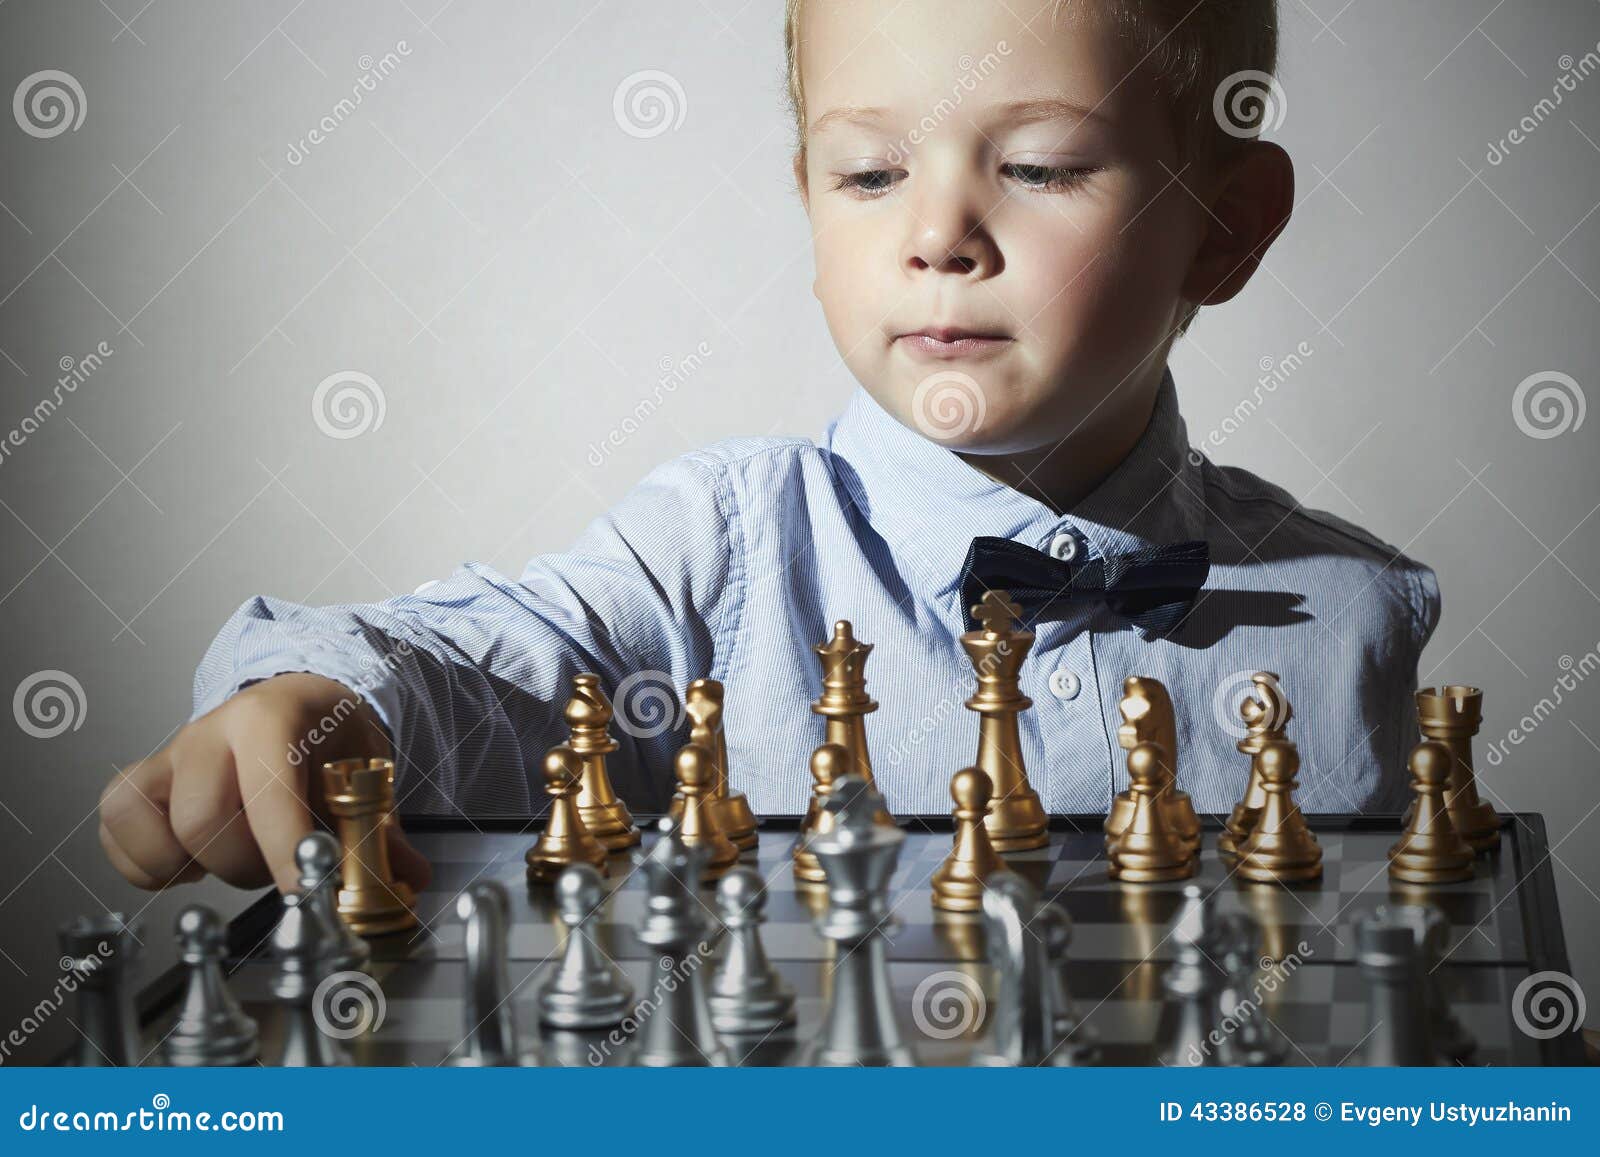 little boy playing chess.smart kid.little genius child. intelligent gam